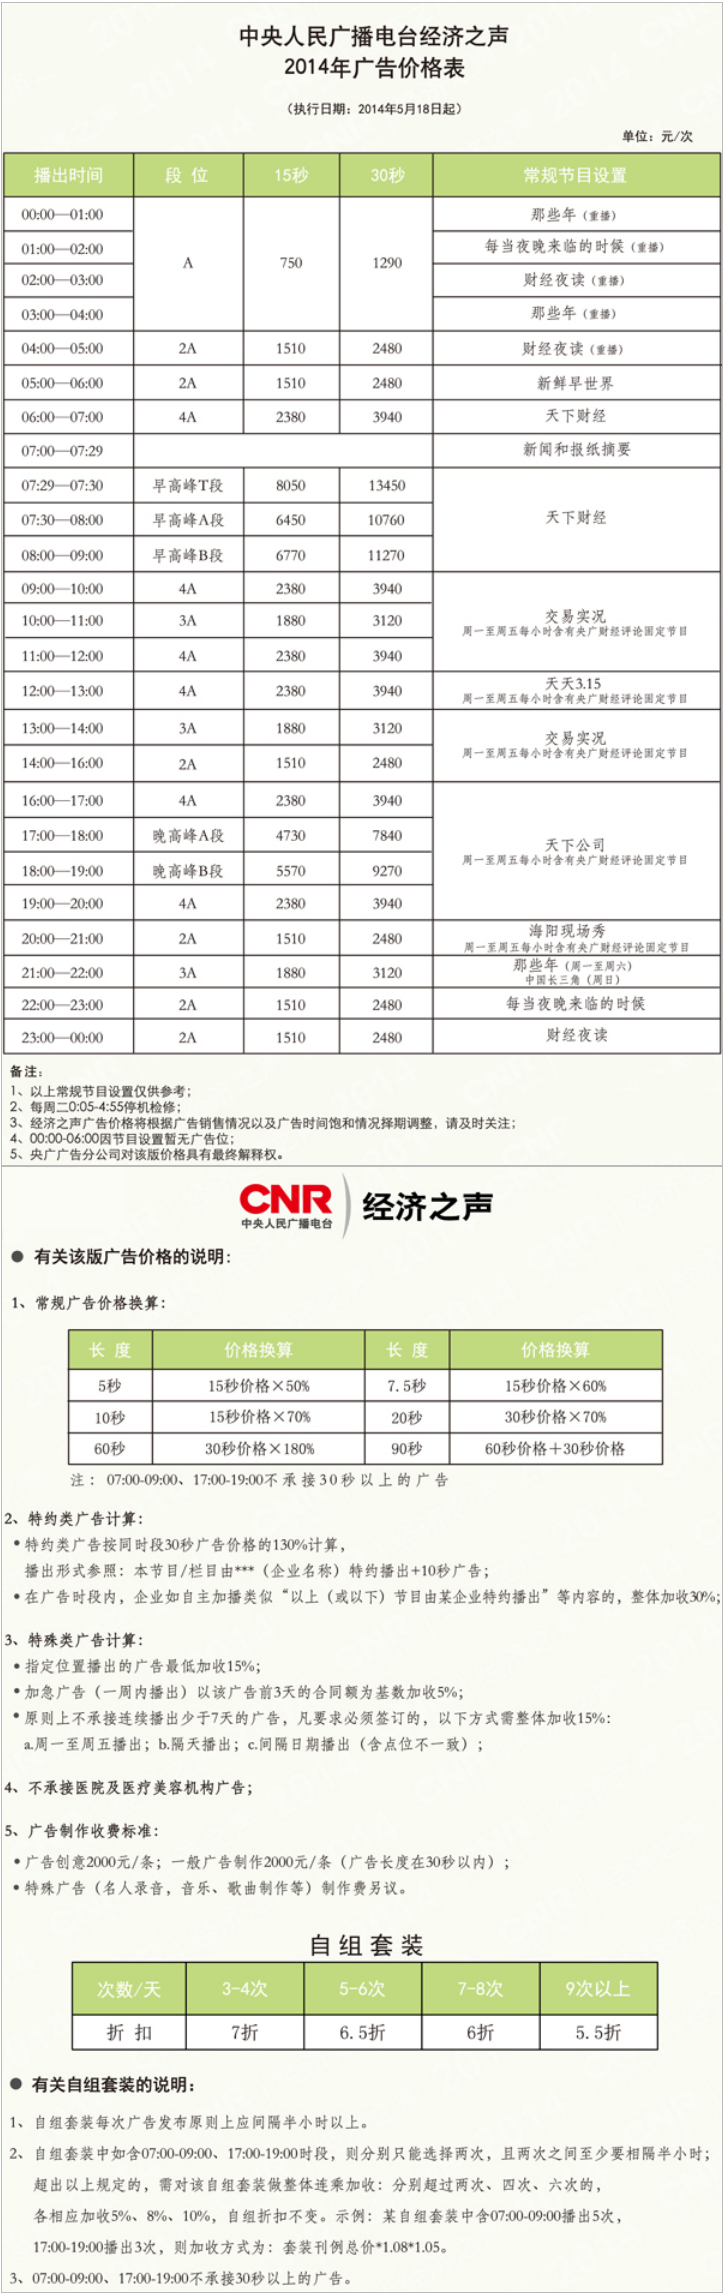 2014中央人民广播电台经济之声 北京FM96.6广告报价表.png